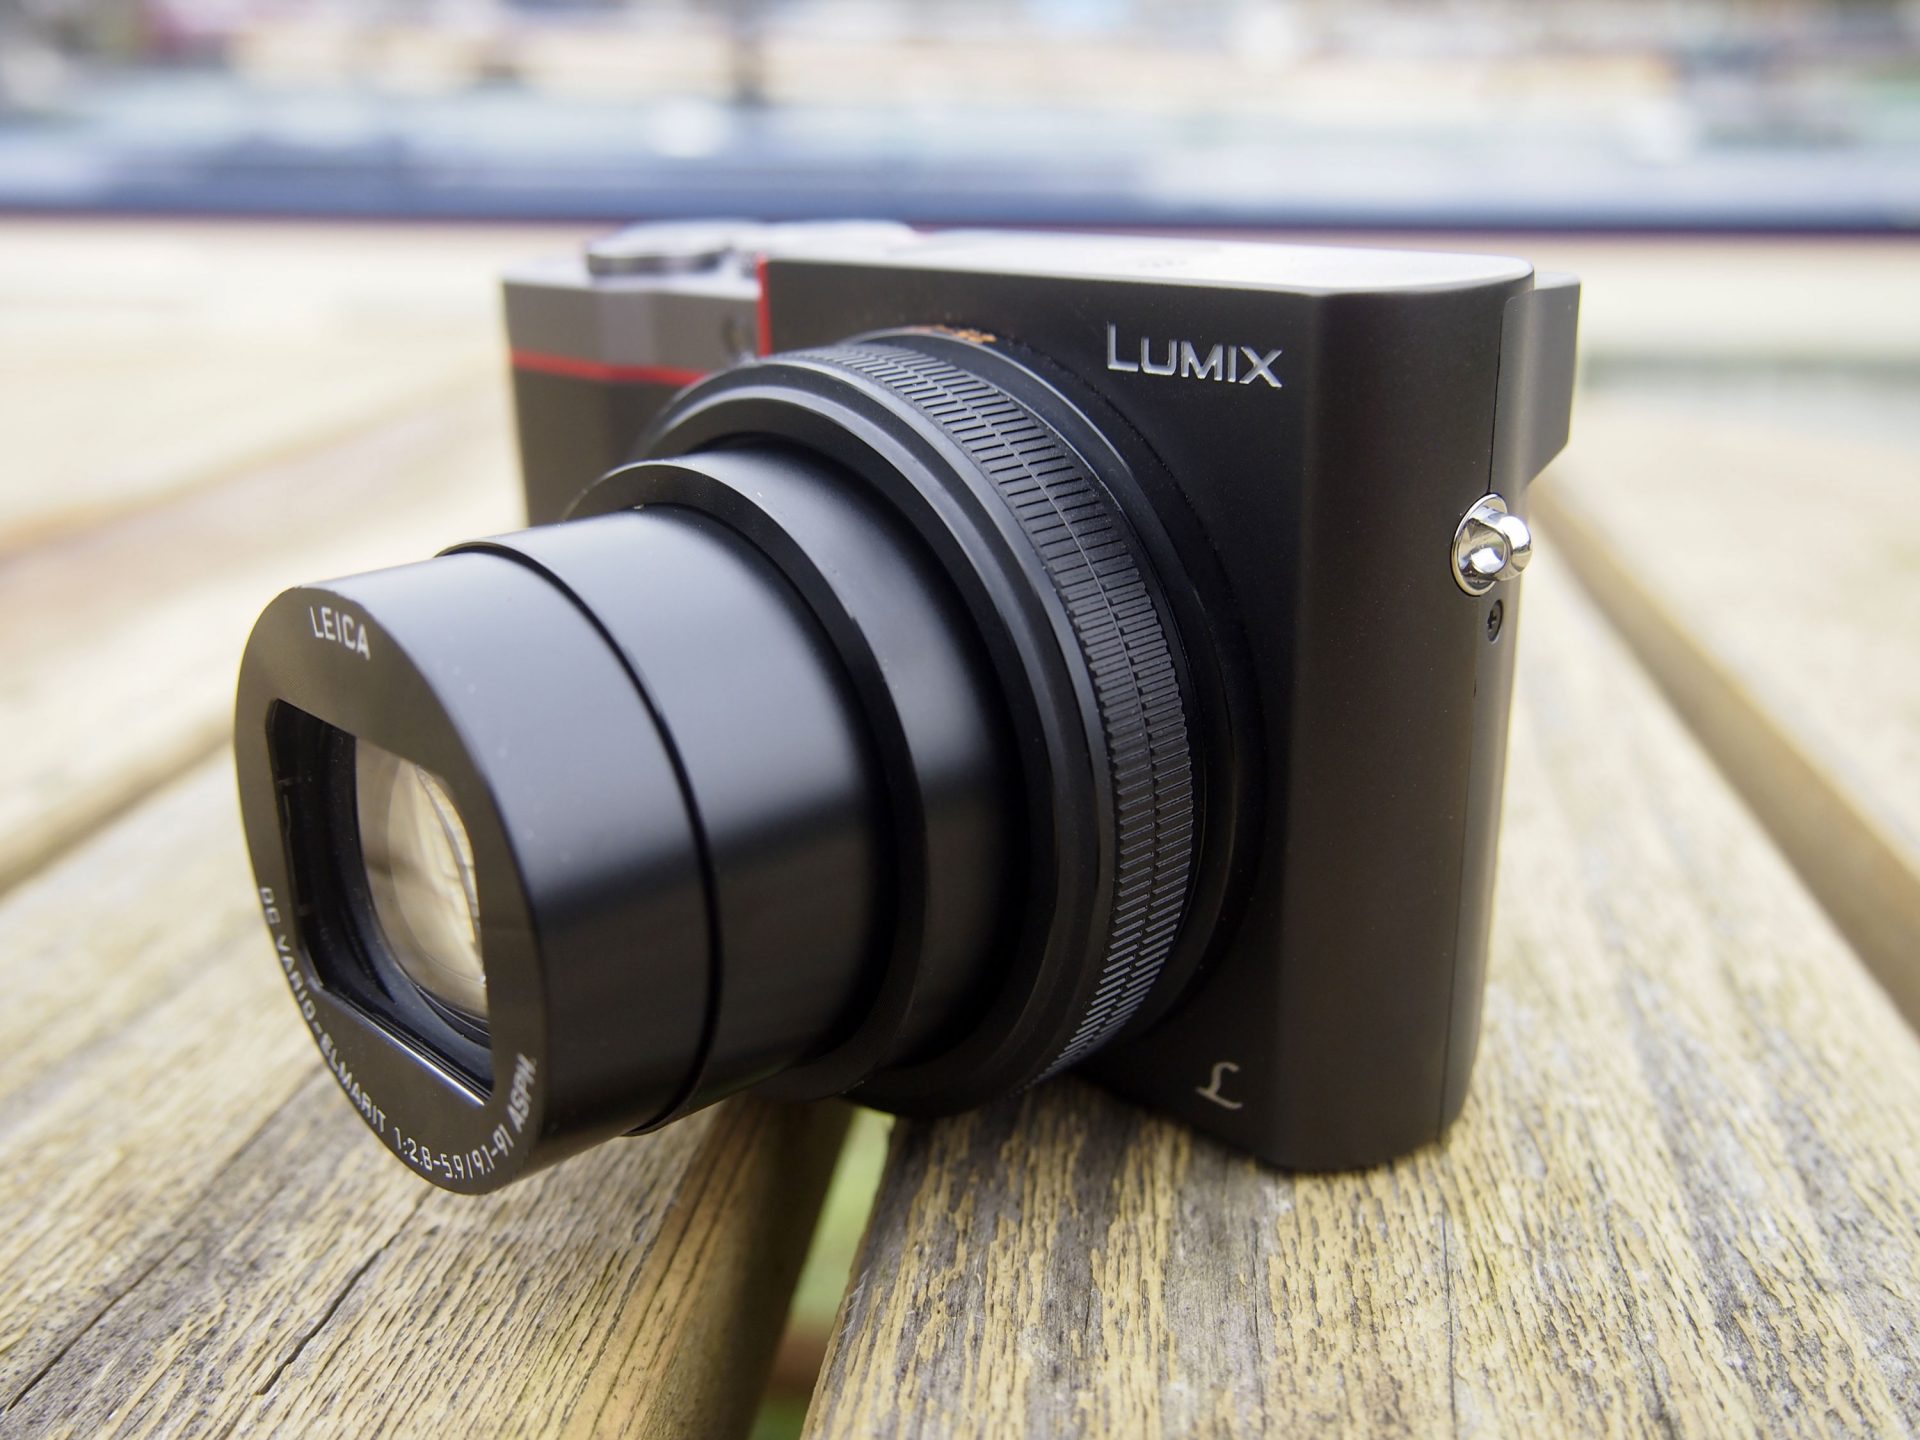 Panasonic Lumix / review | Cameralabs